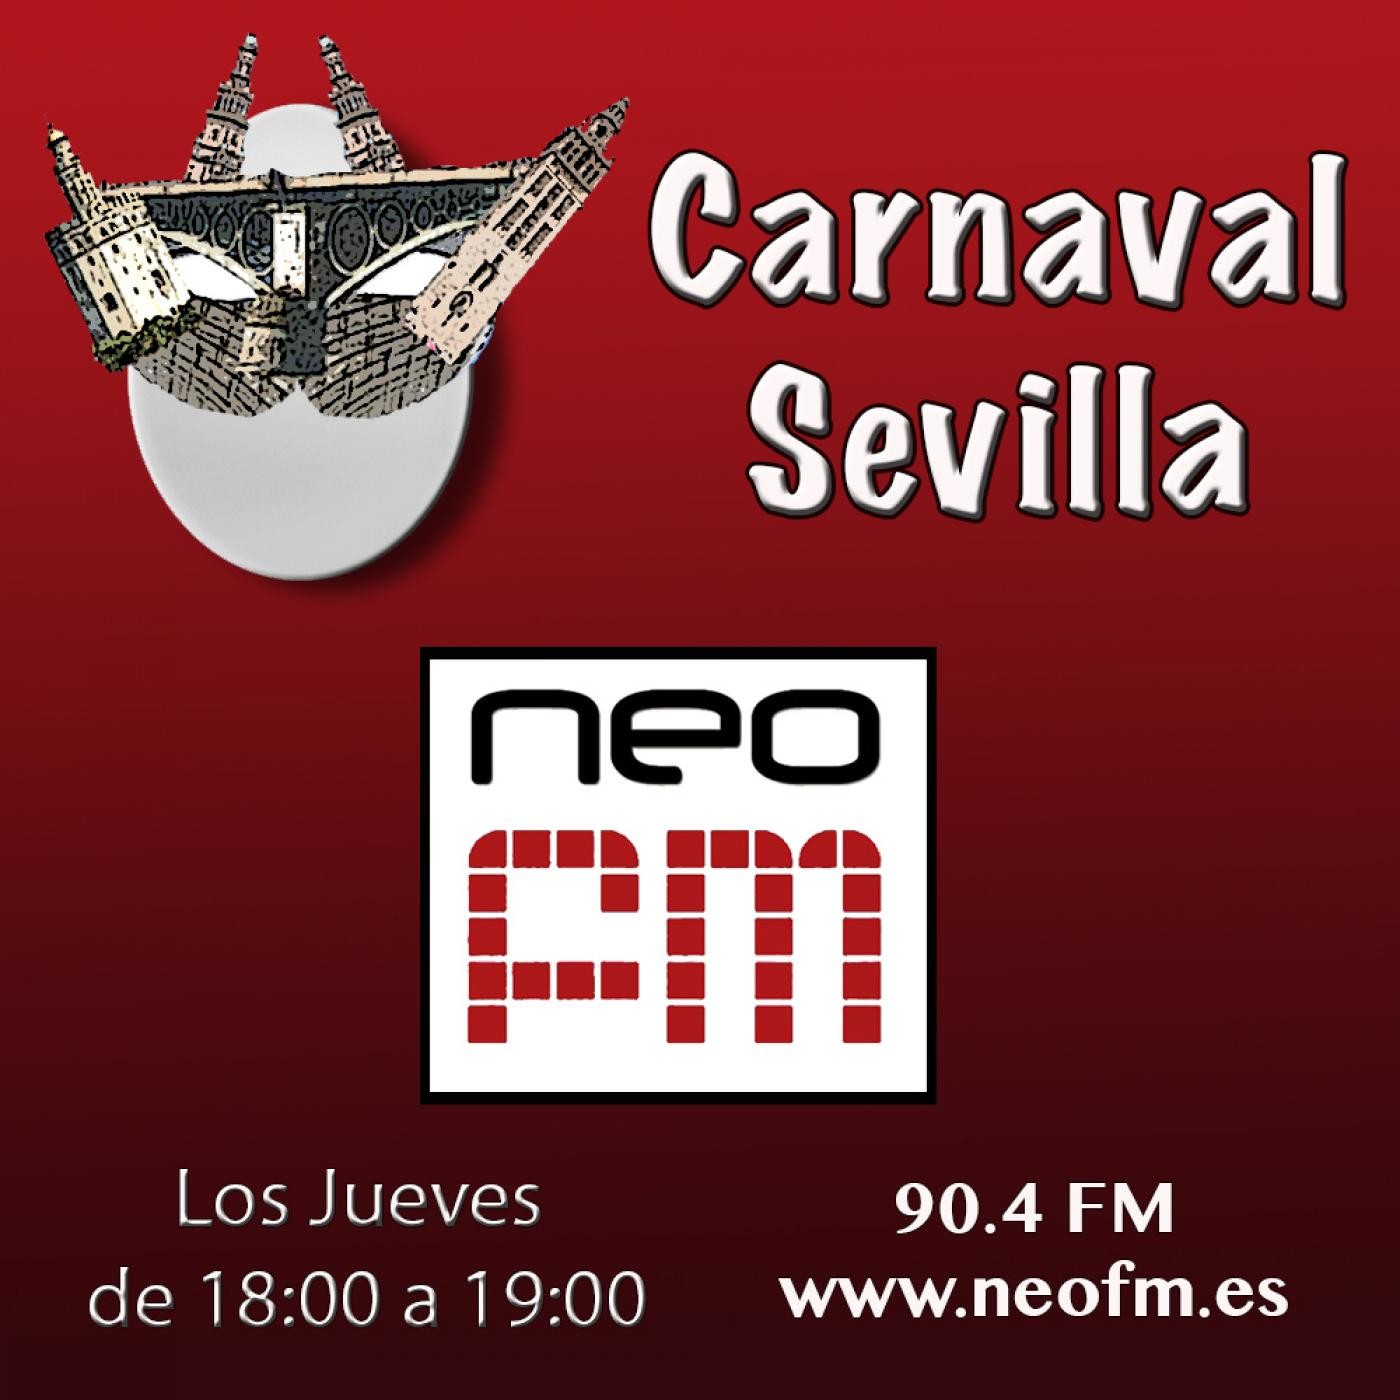 Carnaval Sevilla NEO FM